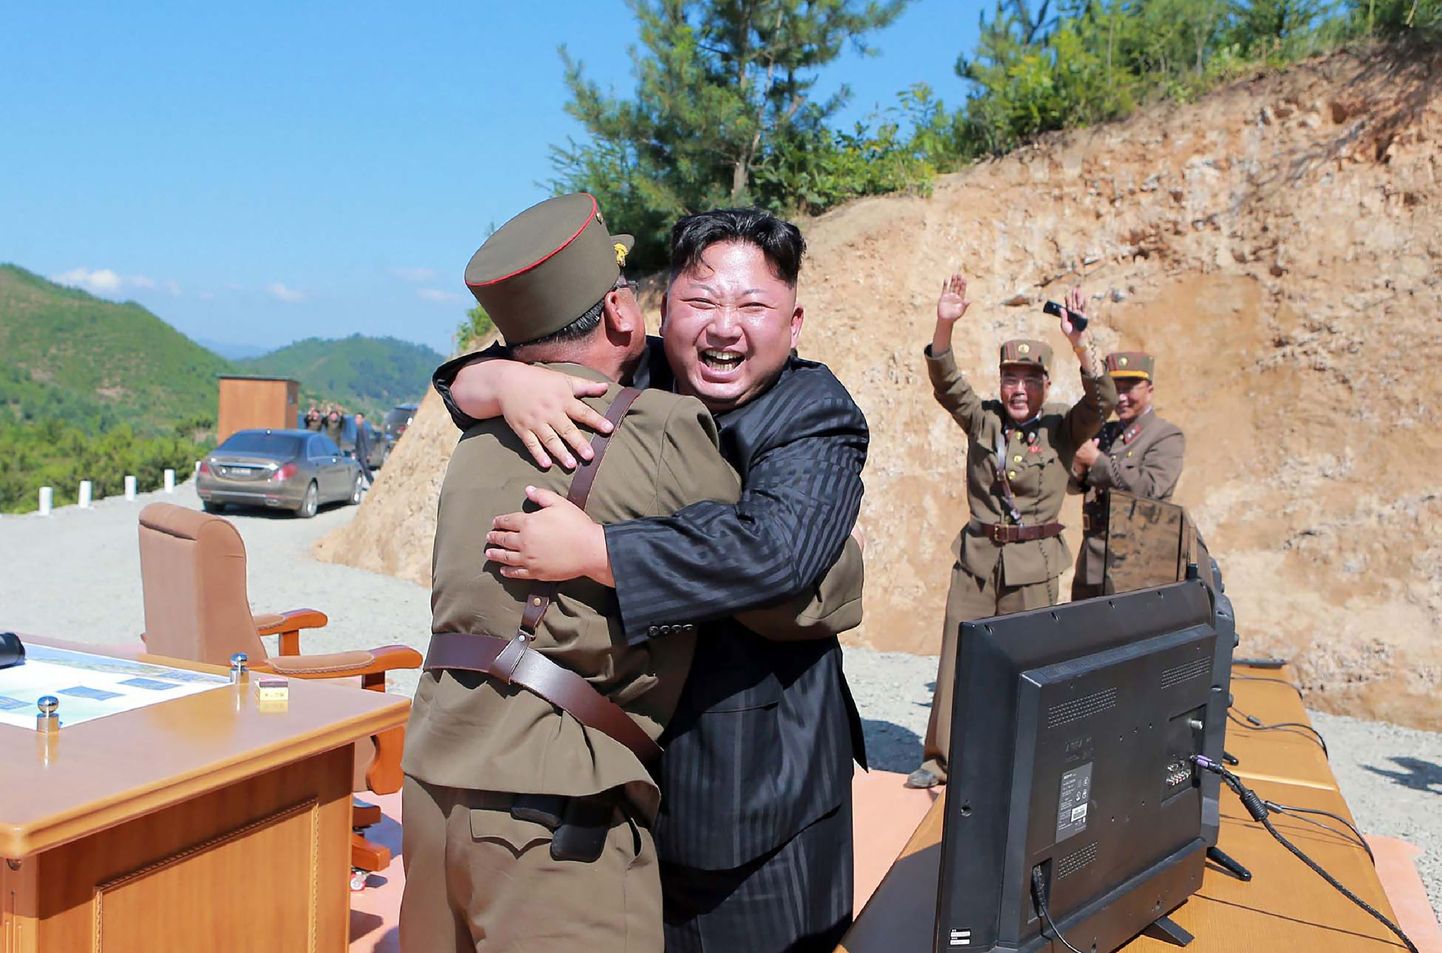 Põhja-Korea ametliku uudisteagentuuri KCNA eile väljastatud fotol näeb riigi liidrit Kim Jong-uni pärast edukat raketikatsetust sõjaväelast embamas.